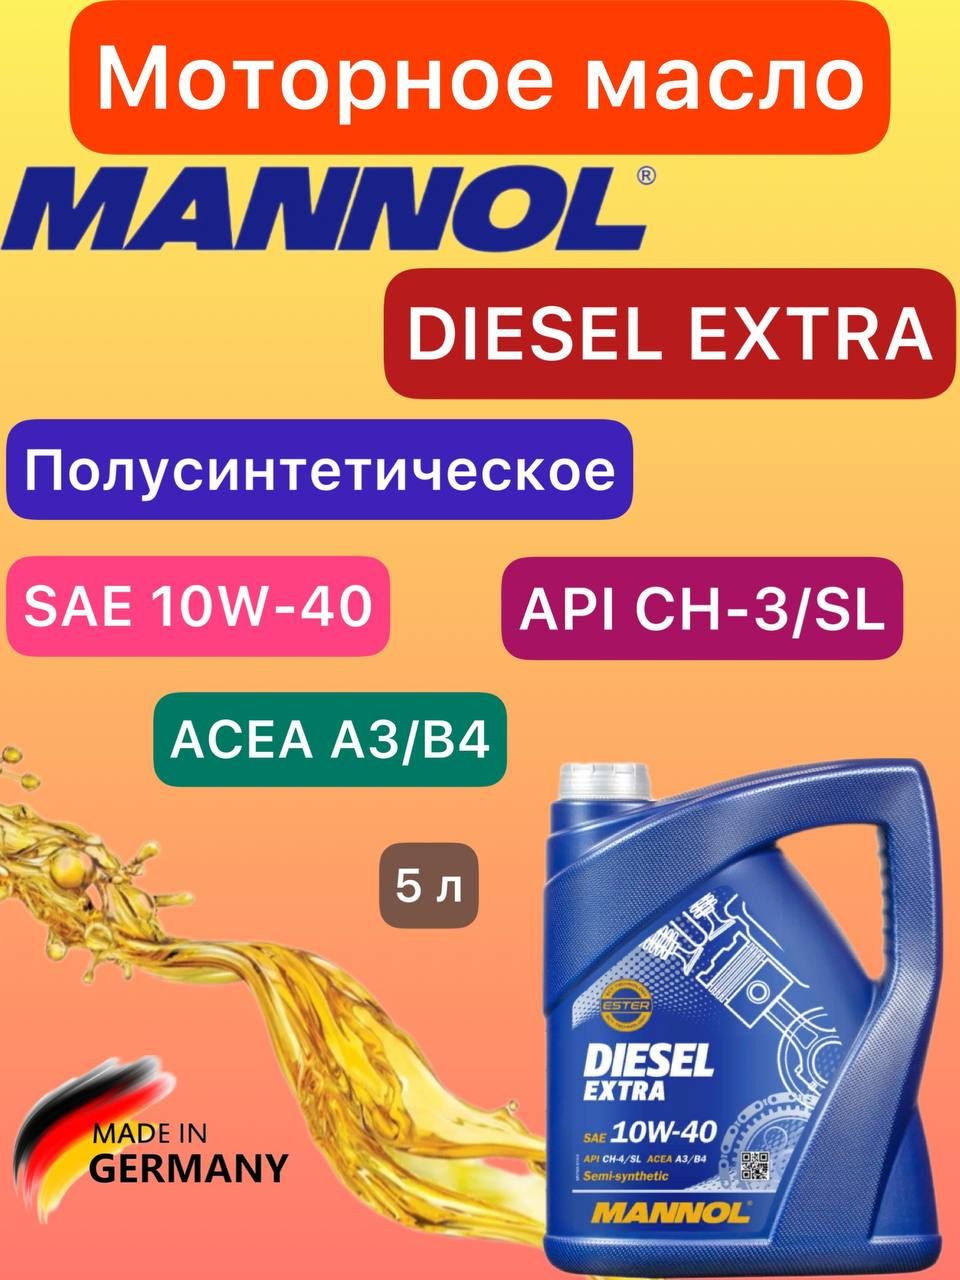 Mannol Diesel Extra 10w-40. Mannol Diesel Extra SAE 10w40 (5л). Mannol Diesel Extra полусинтетика 10w-40. Масло diesel extra